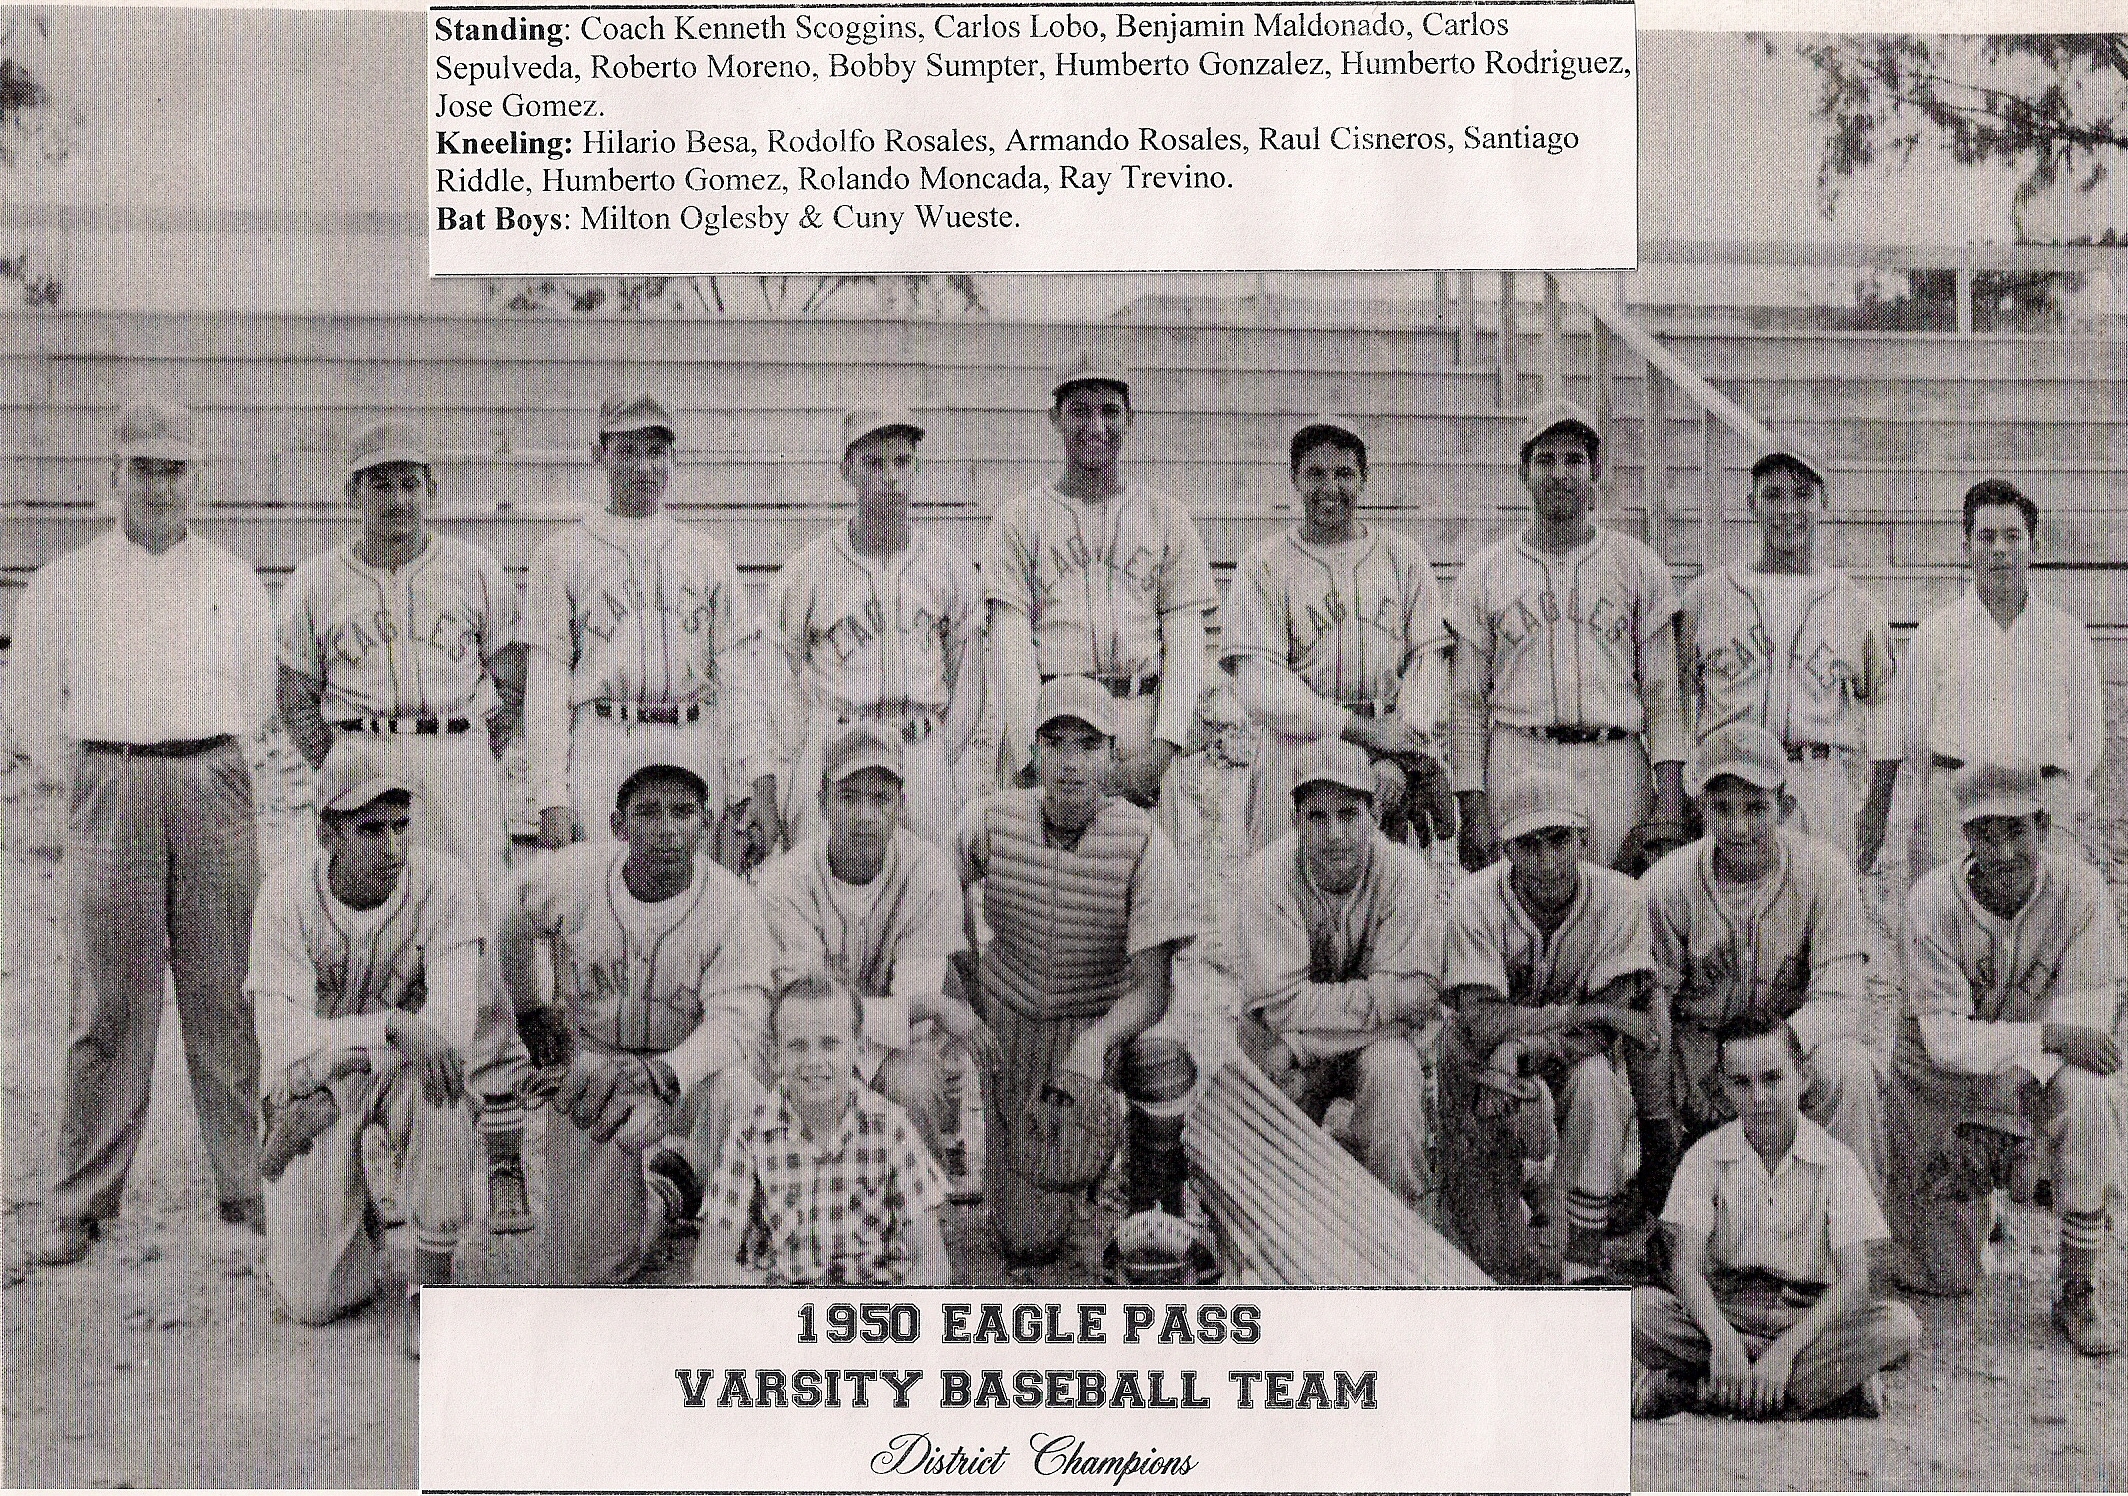 1950 eagles baseball team.jpg